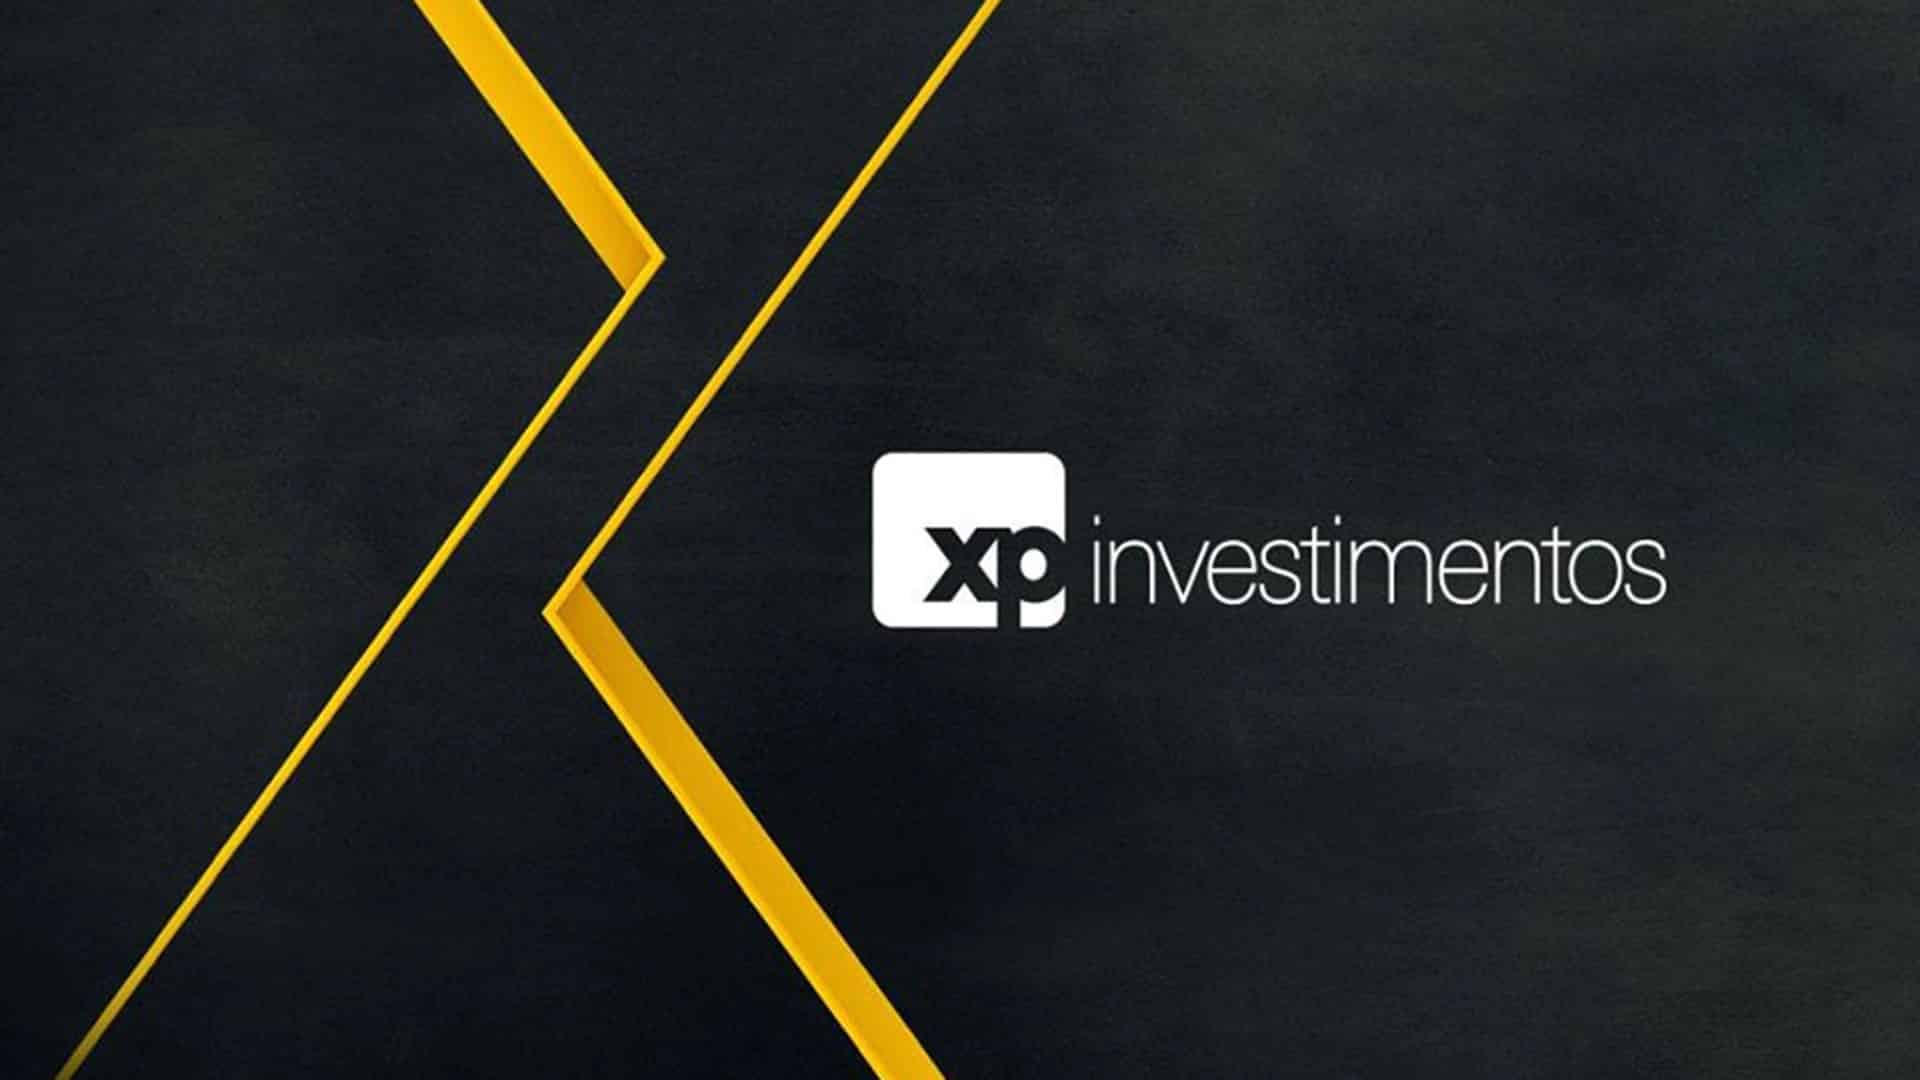 XP investimentos adquire fatia de empresa dona de mais de R$ 11 bilhões